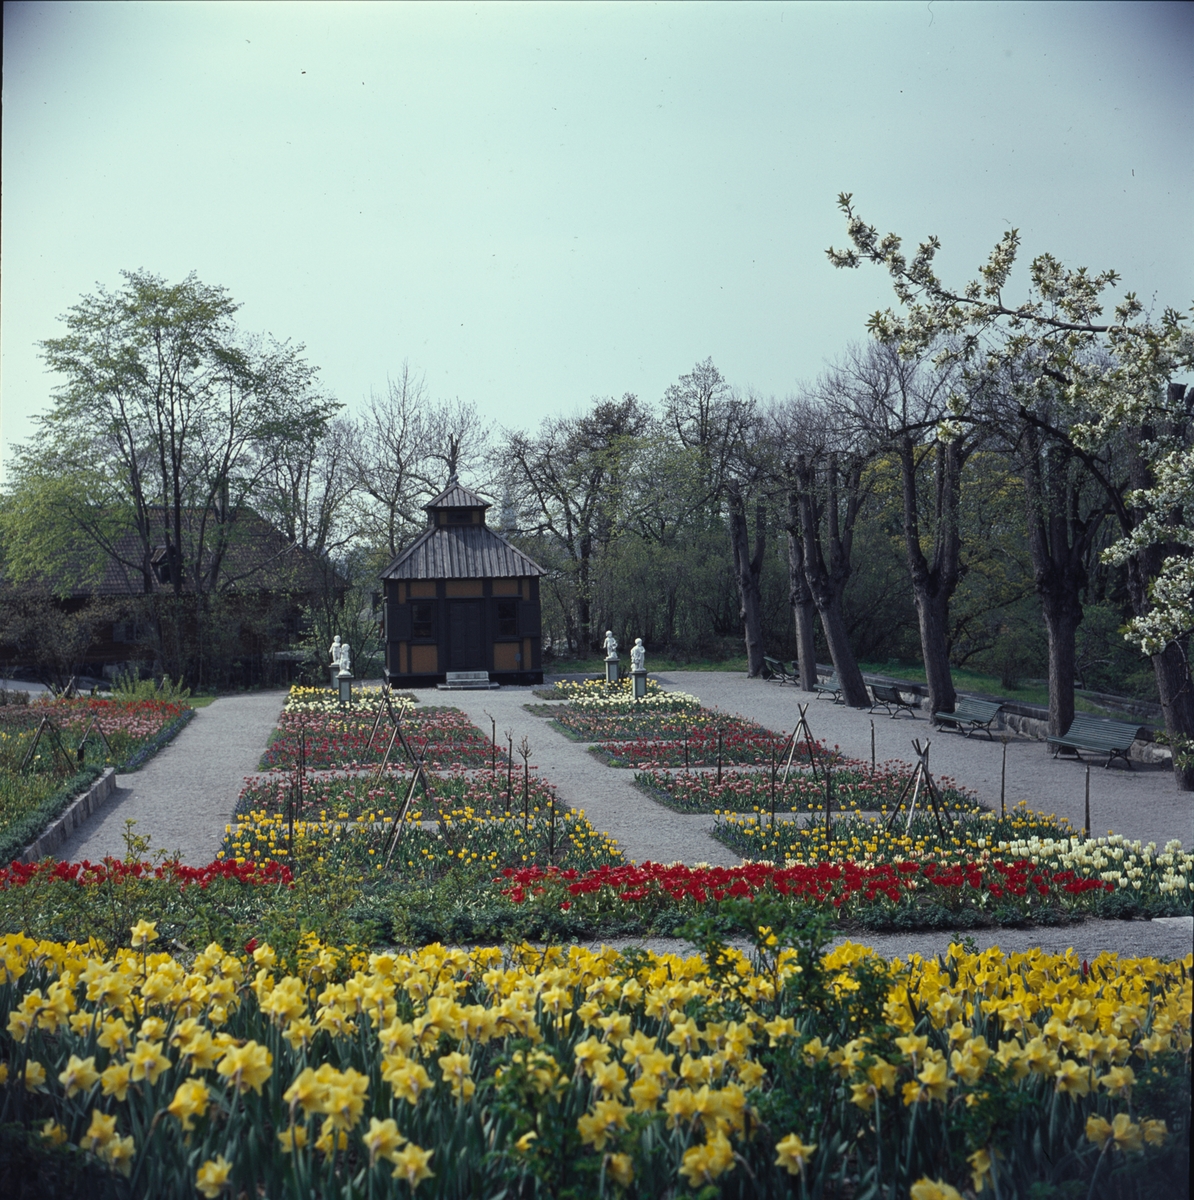 Blommande vårblommor i Rosenträdgårdens välskötta rabatter. I bakgrunden begrundar Swedenborgs lusthus fyra figurer som dansar i den färgrika blomsterprakten.